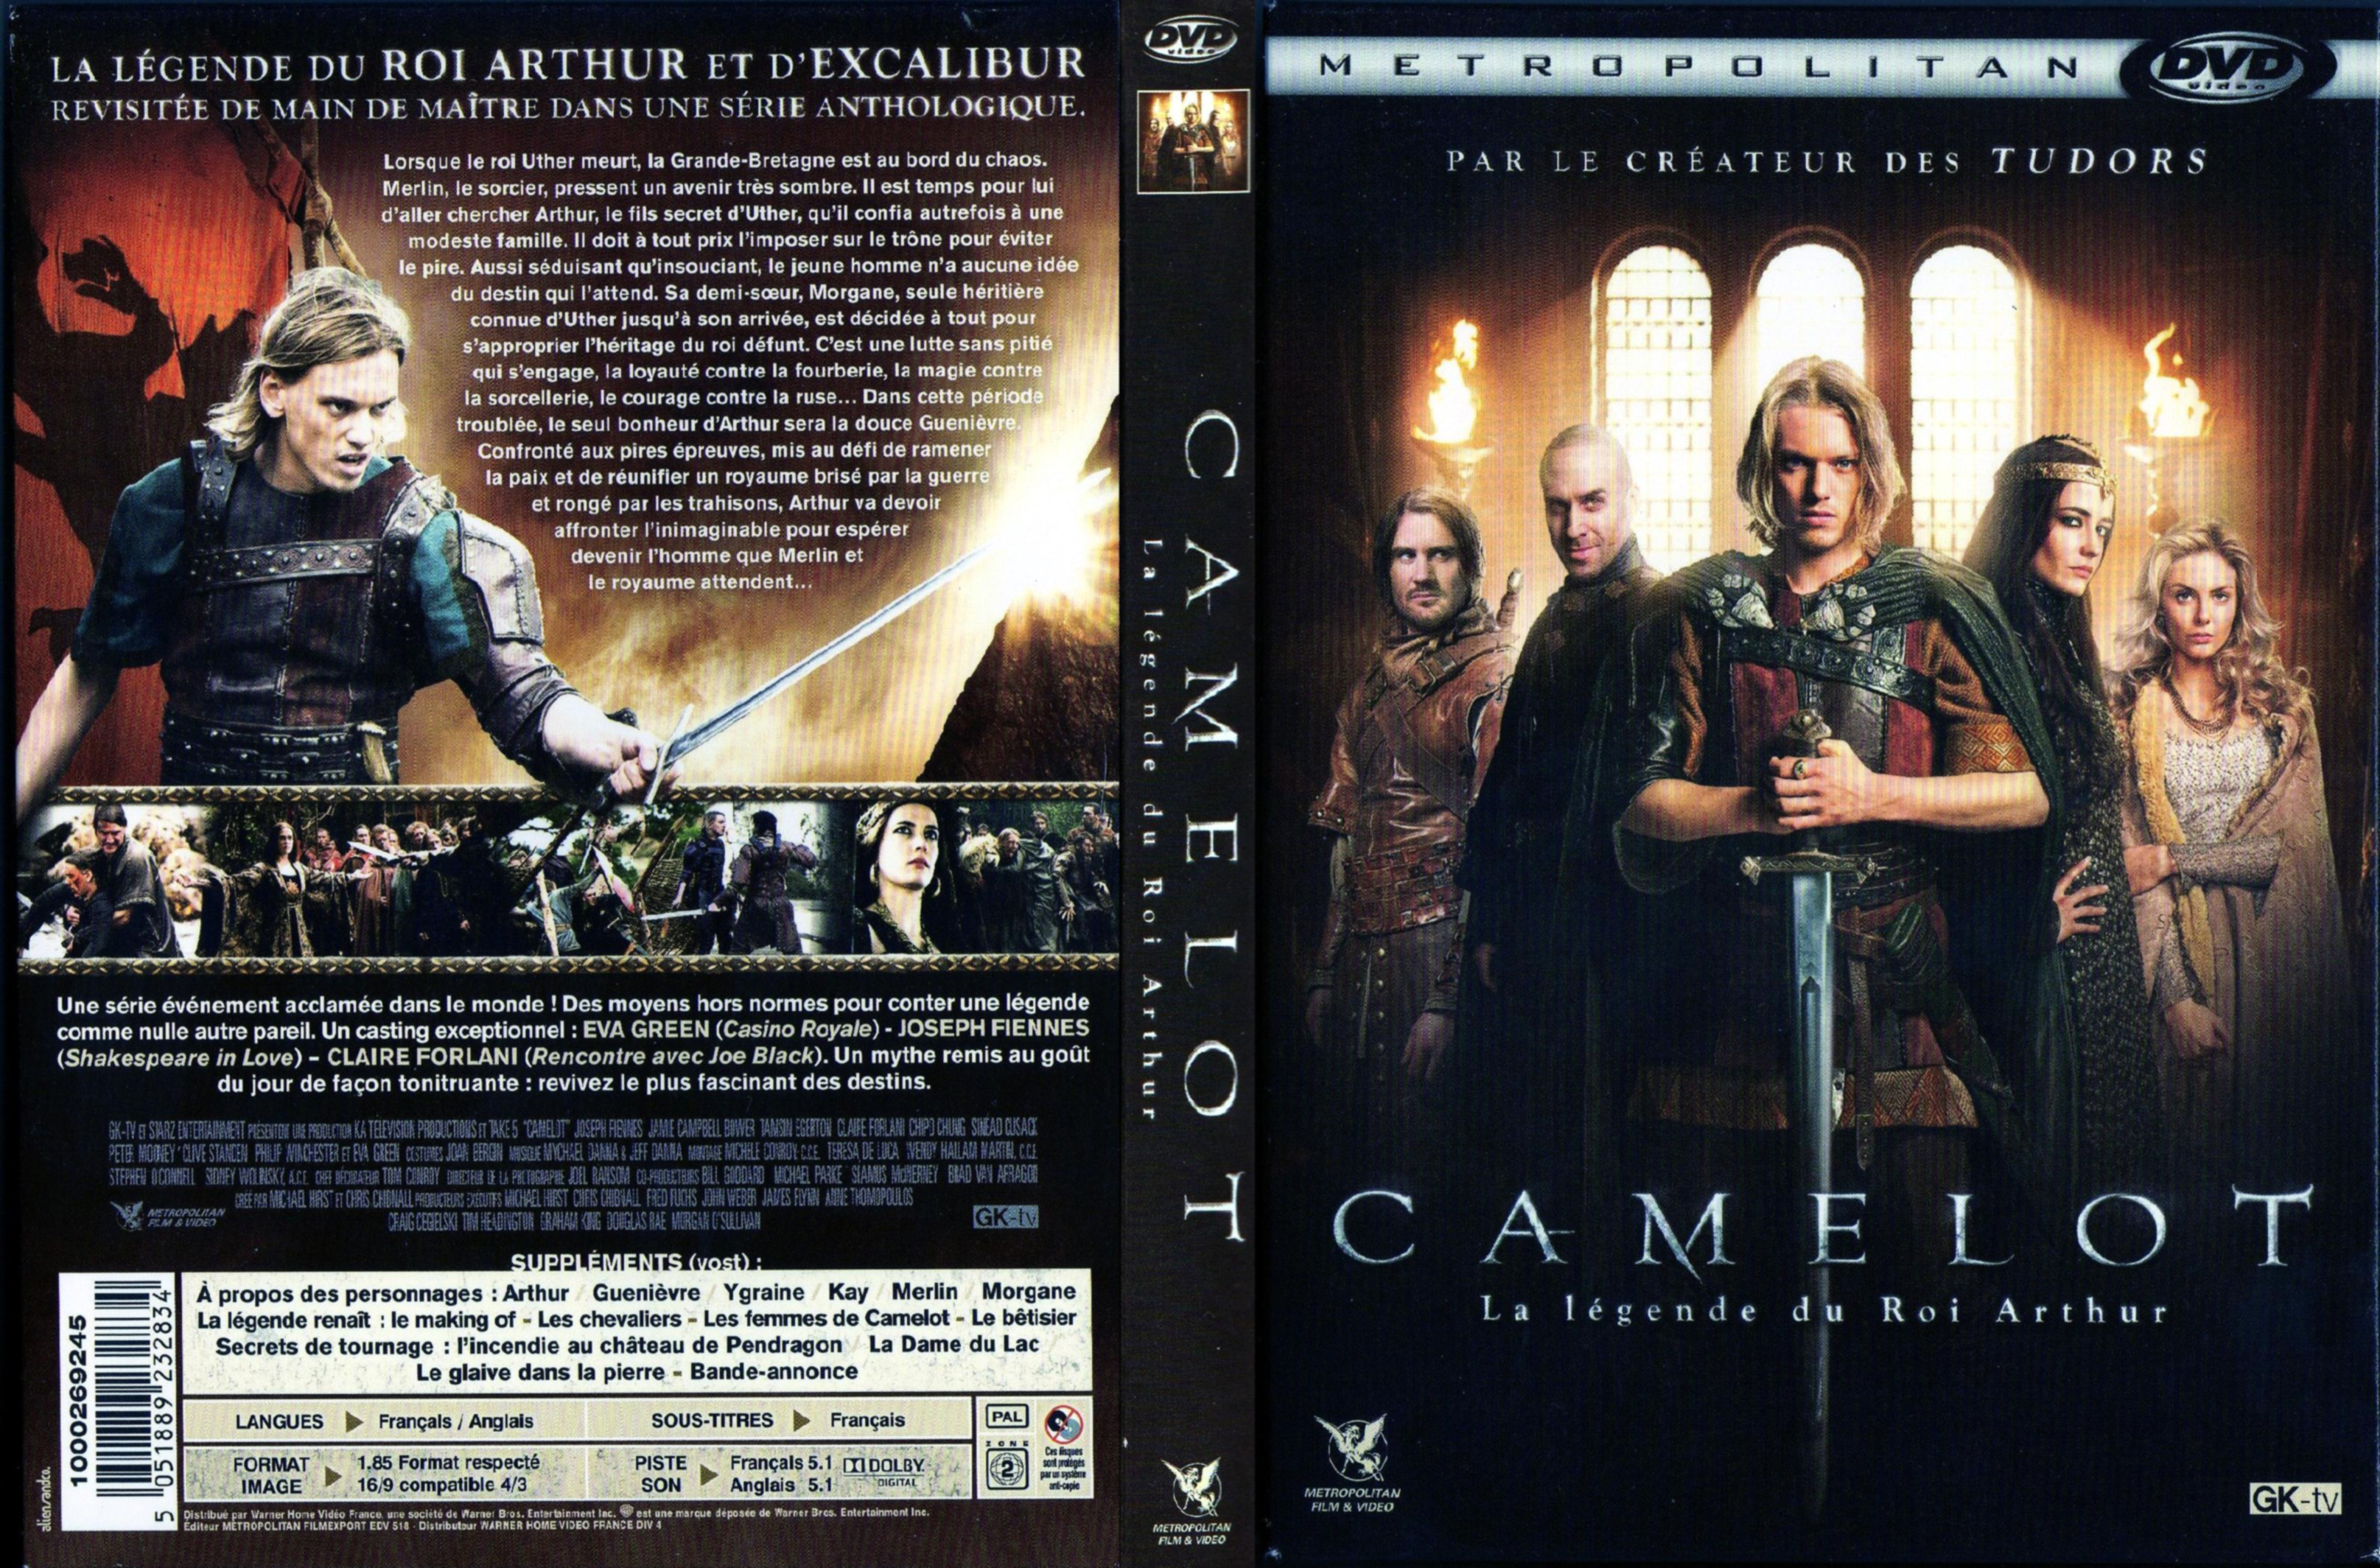 Jaquette DVD Camelot La legende du roi Arthur